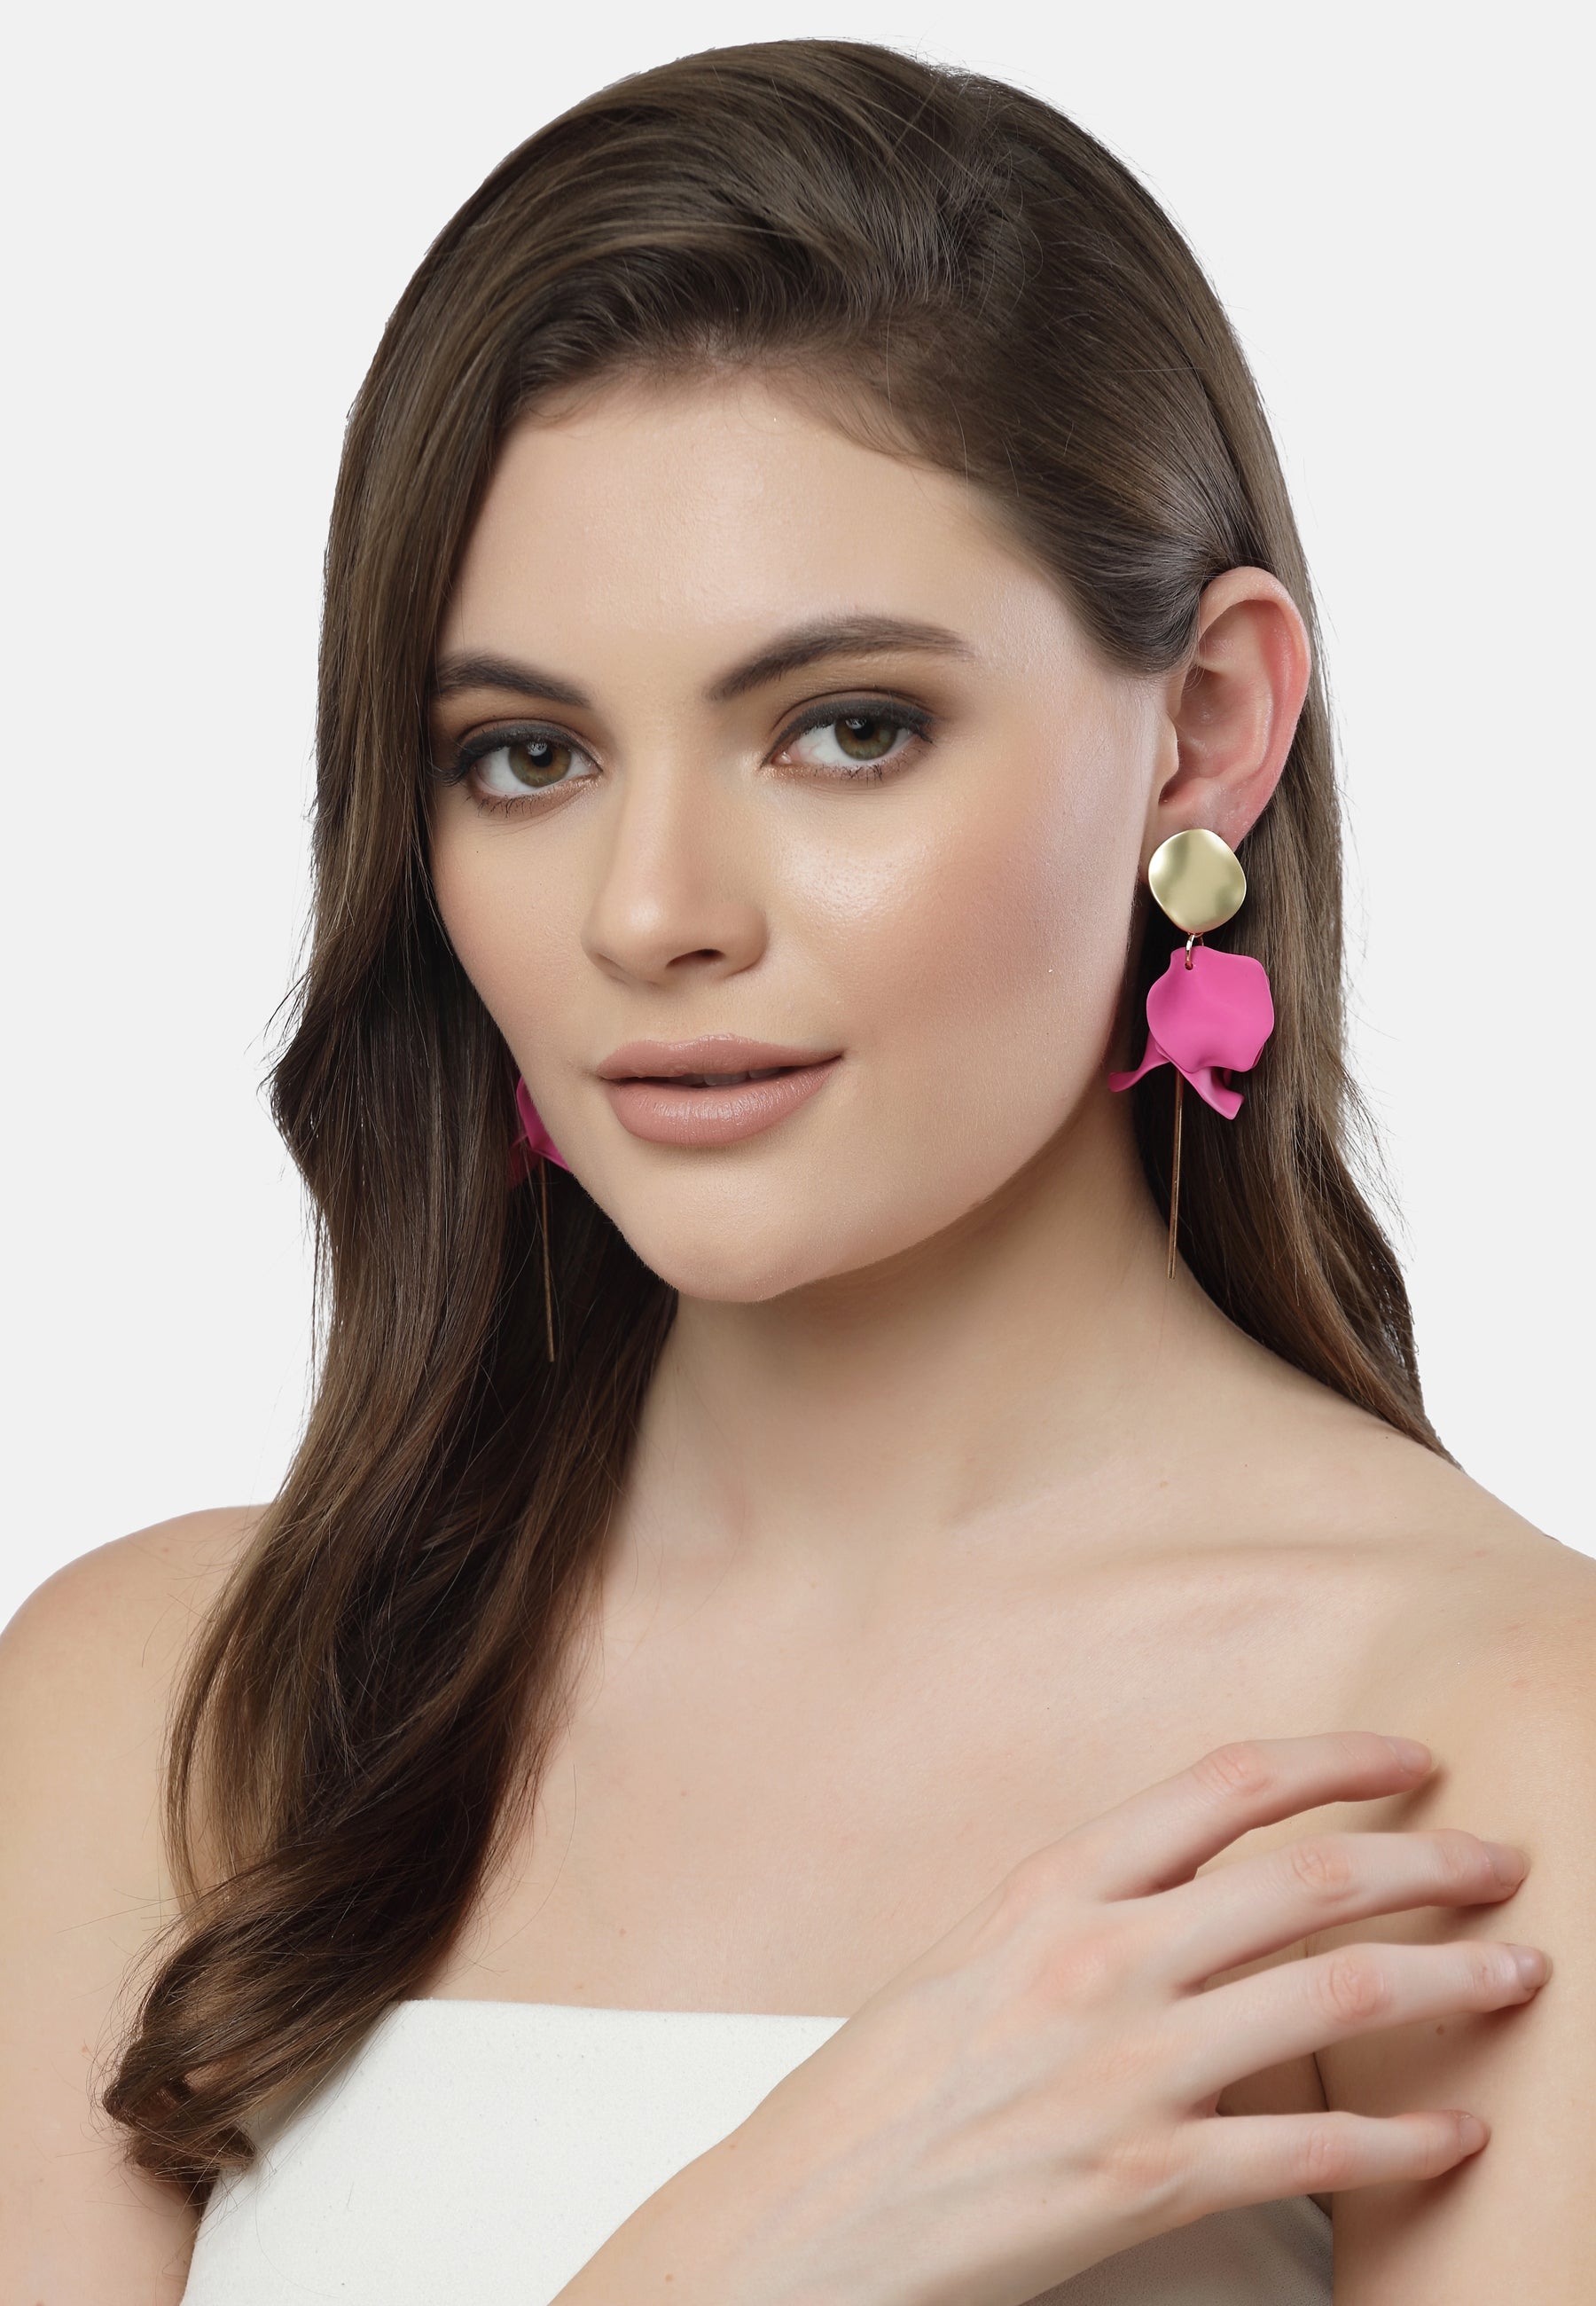 Petals Earrings in pink